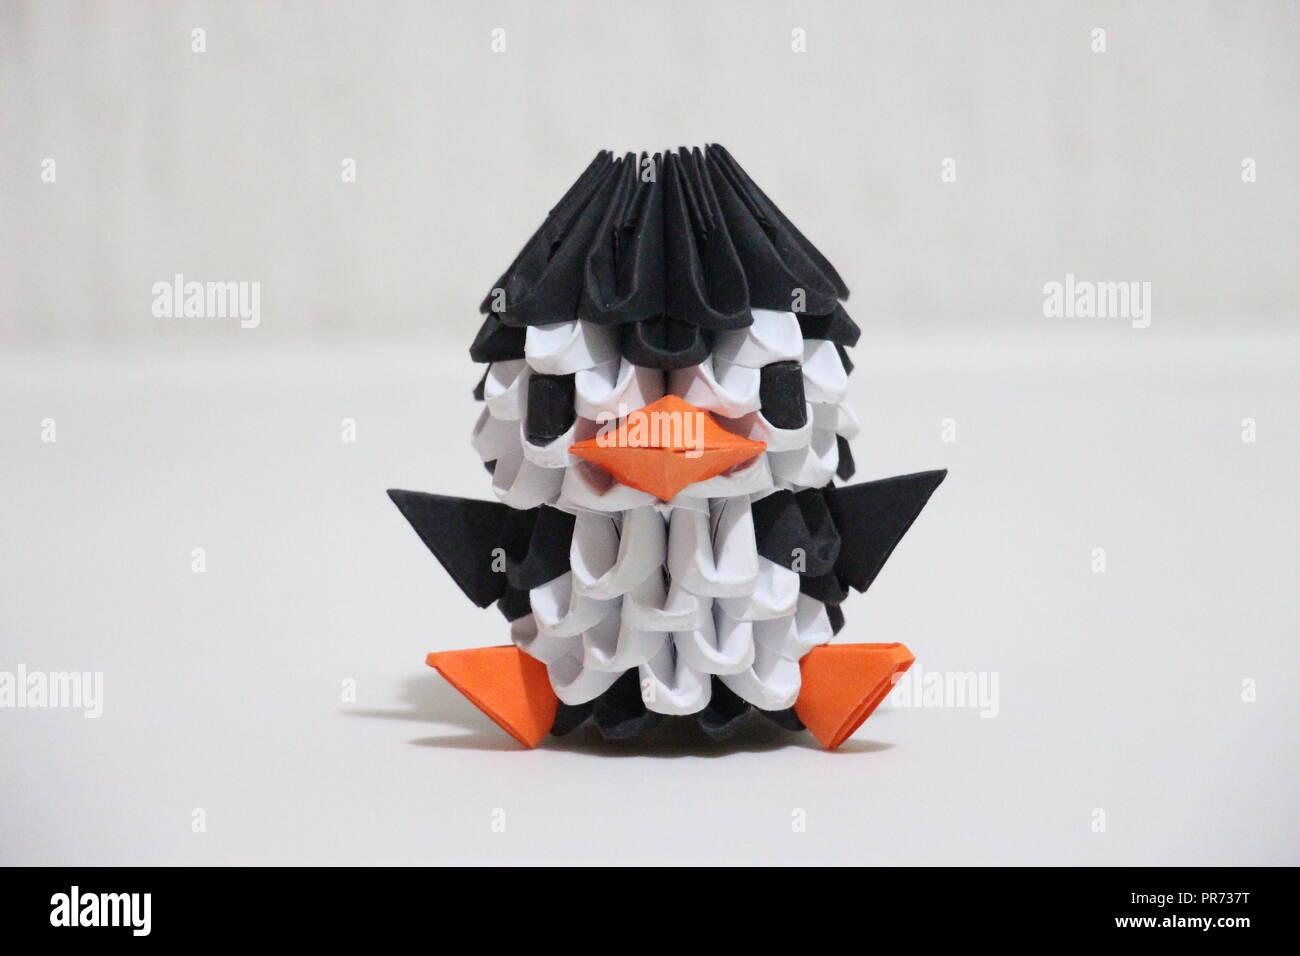 Origami 3d immagini e fotografie stock ad alta risoluzione - Alamy